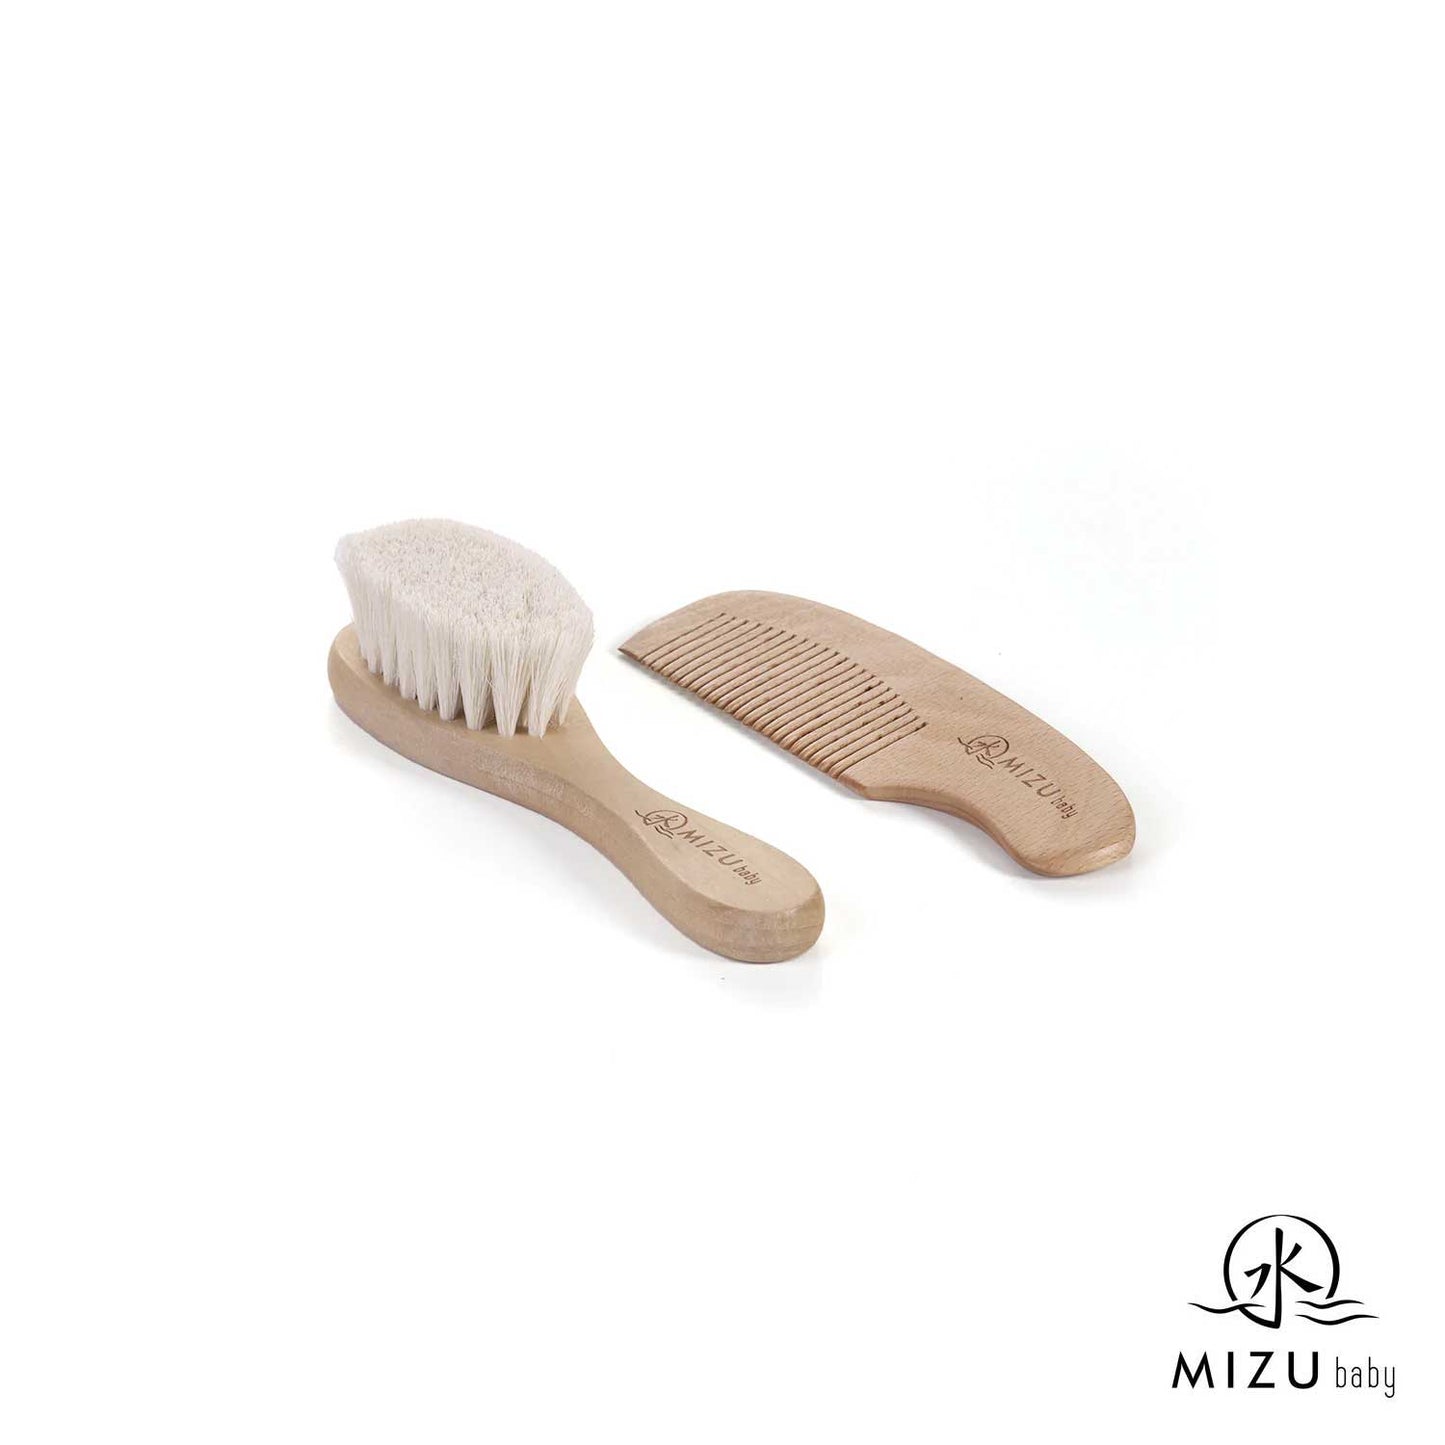 Mizu - Mami Bamboo brush and comb set